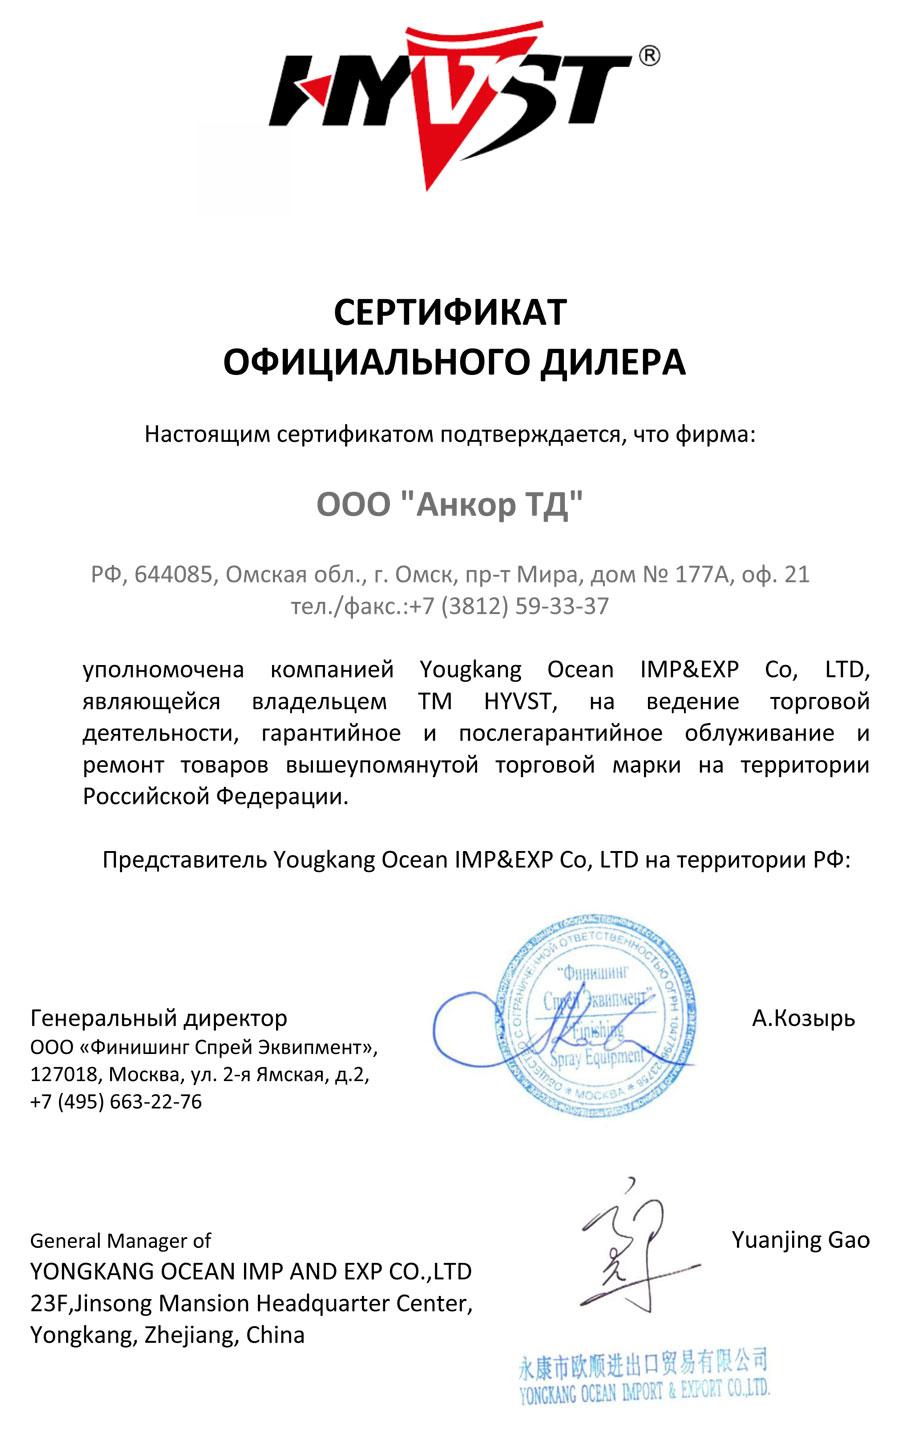 Сертификат официального дилера HYVST